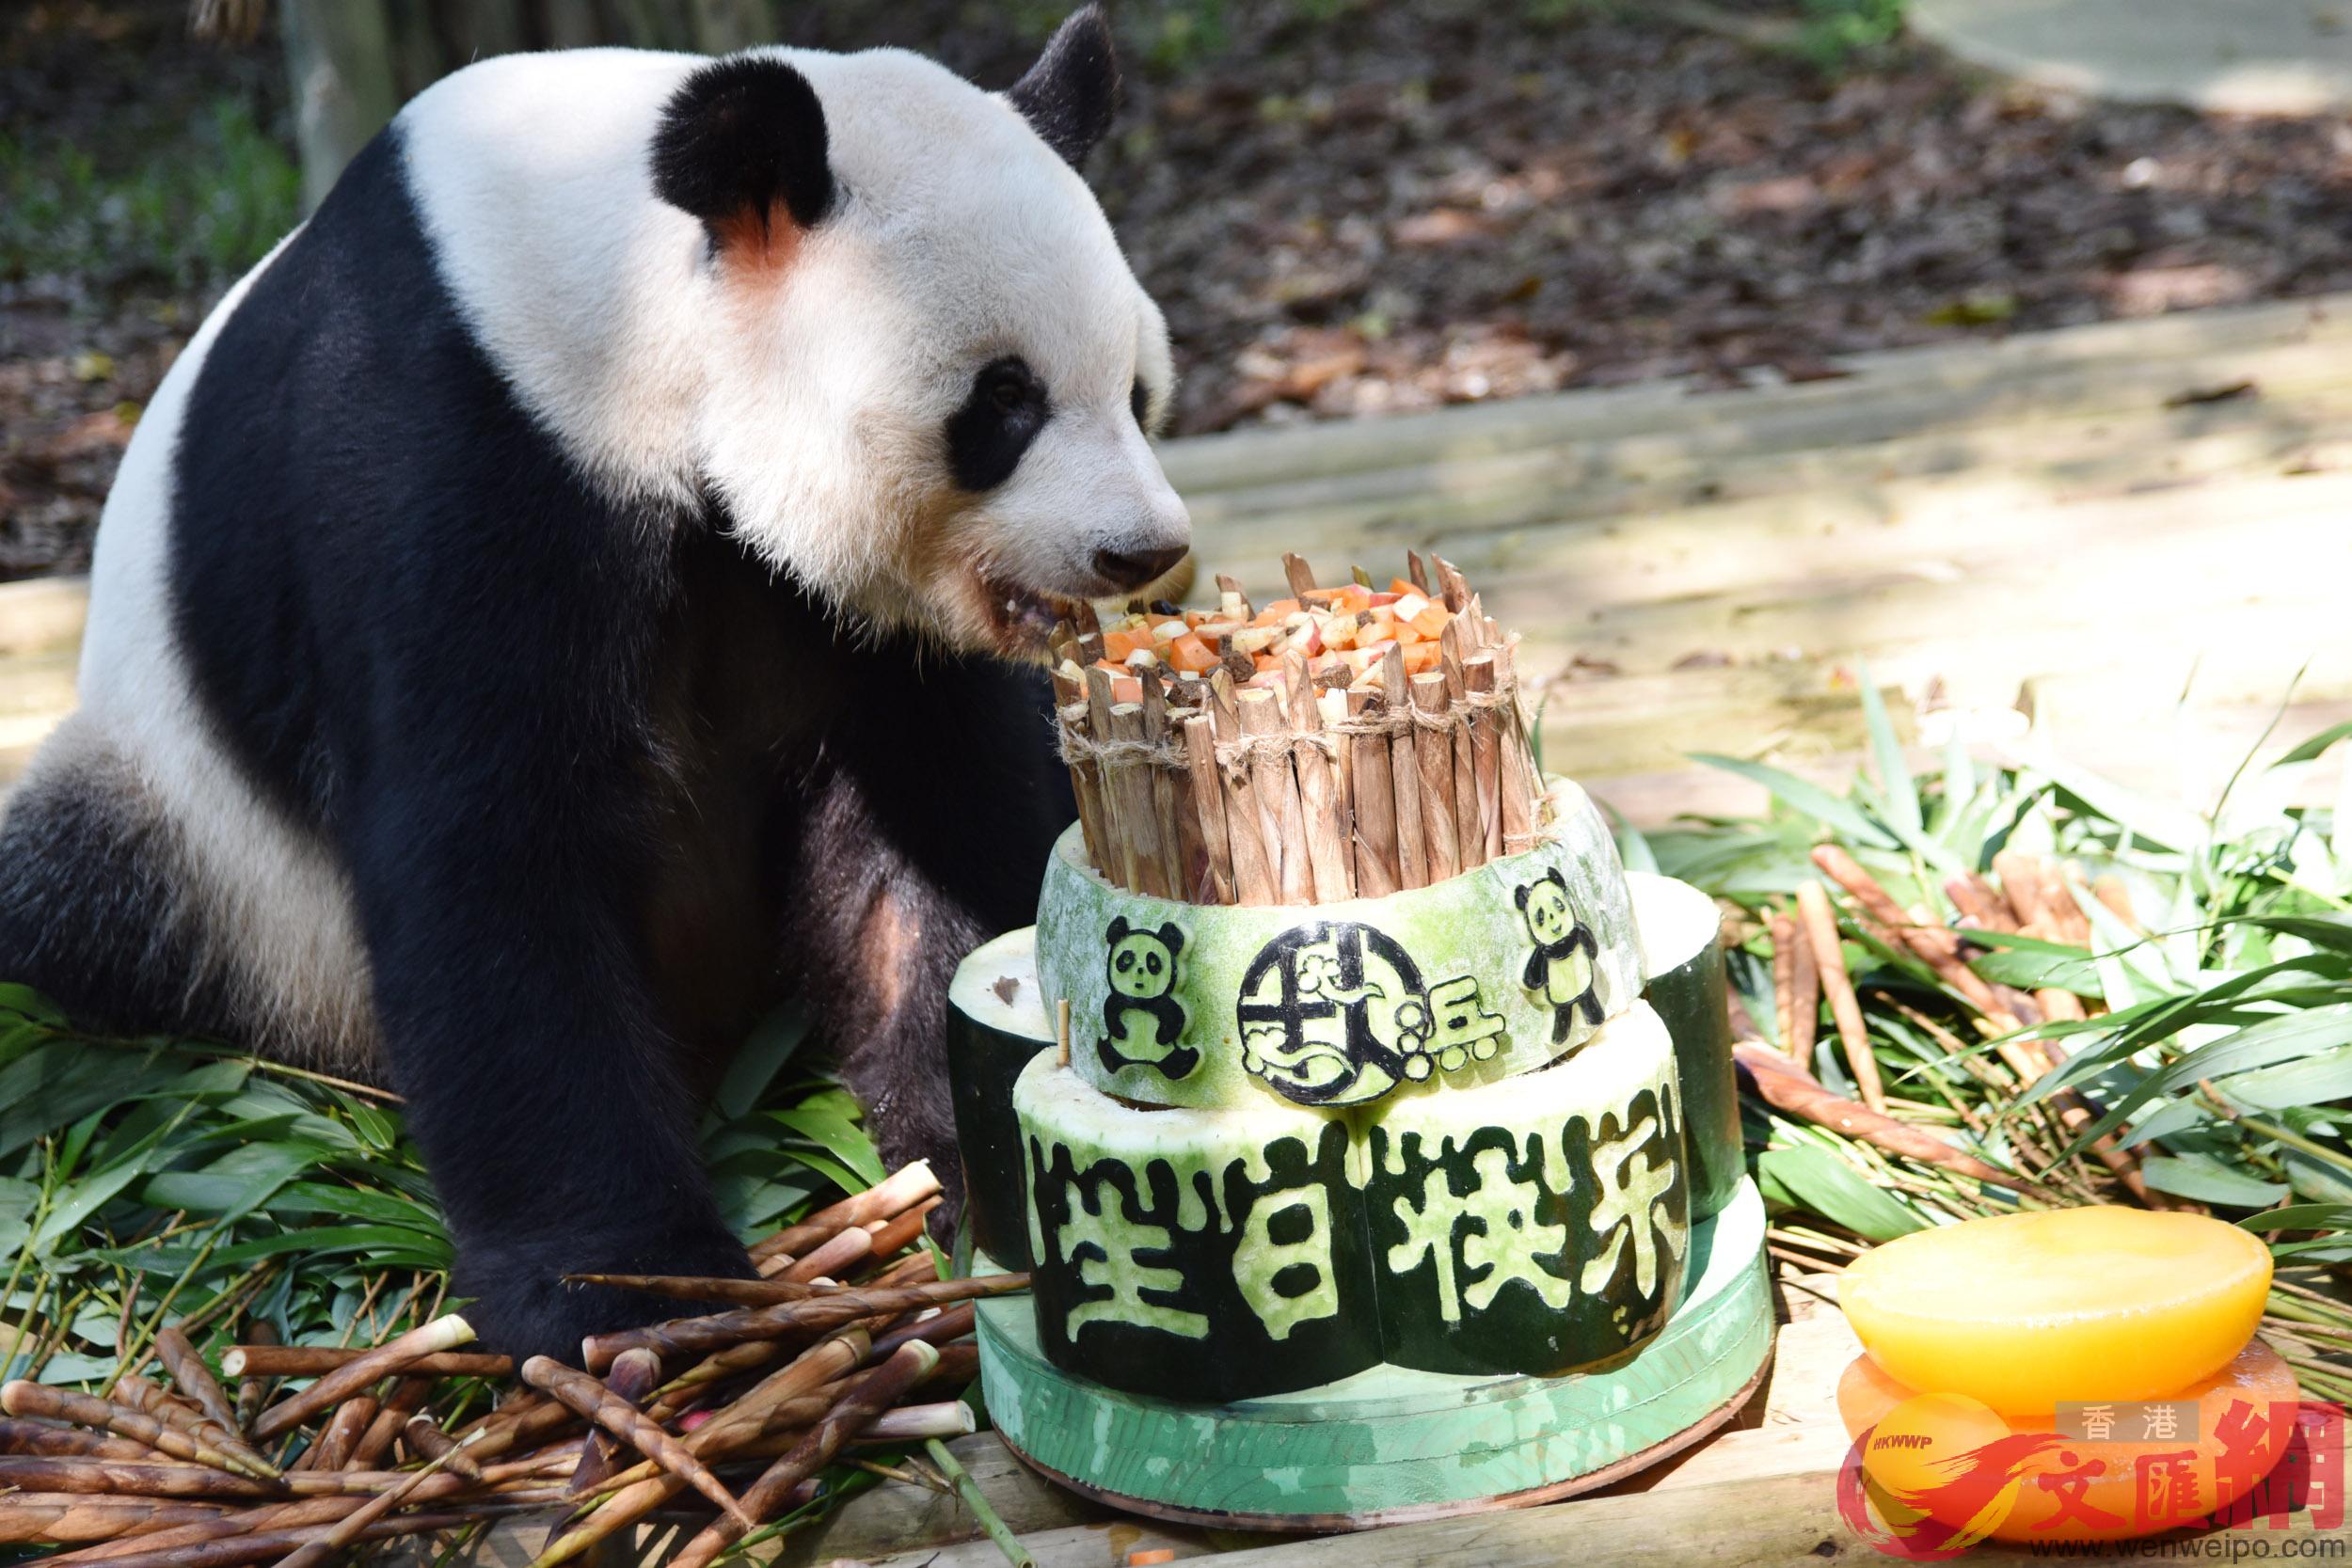 大熊貓秋濱在品嚐自己的生日蛋糕 記者 郭若溪攝